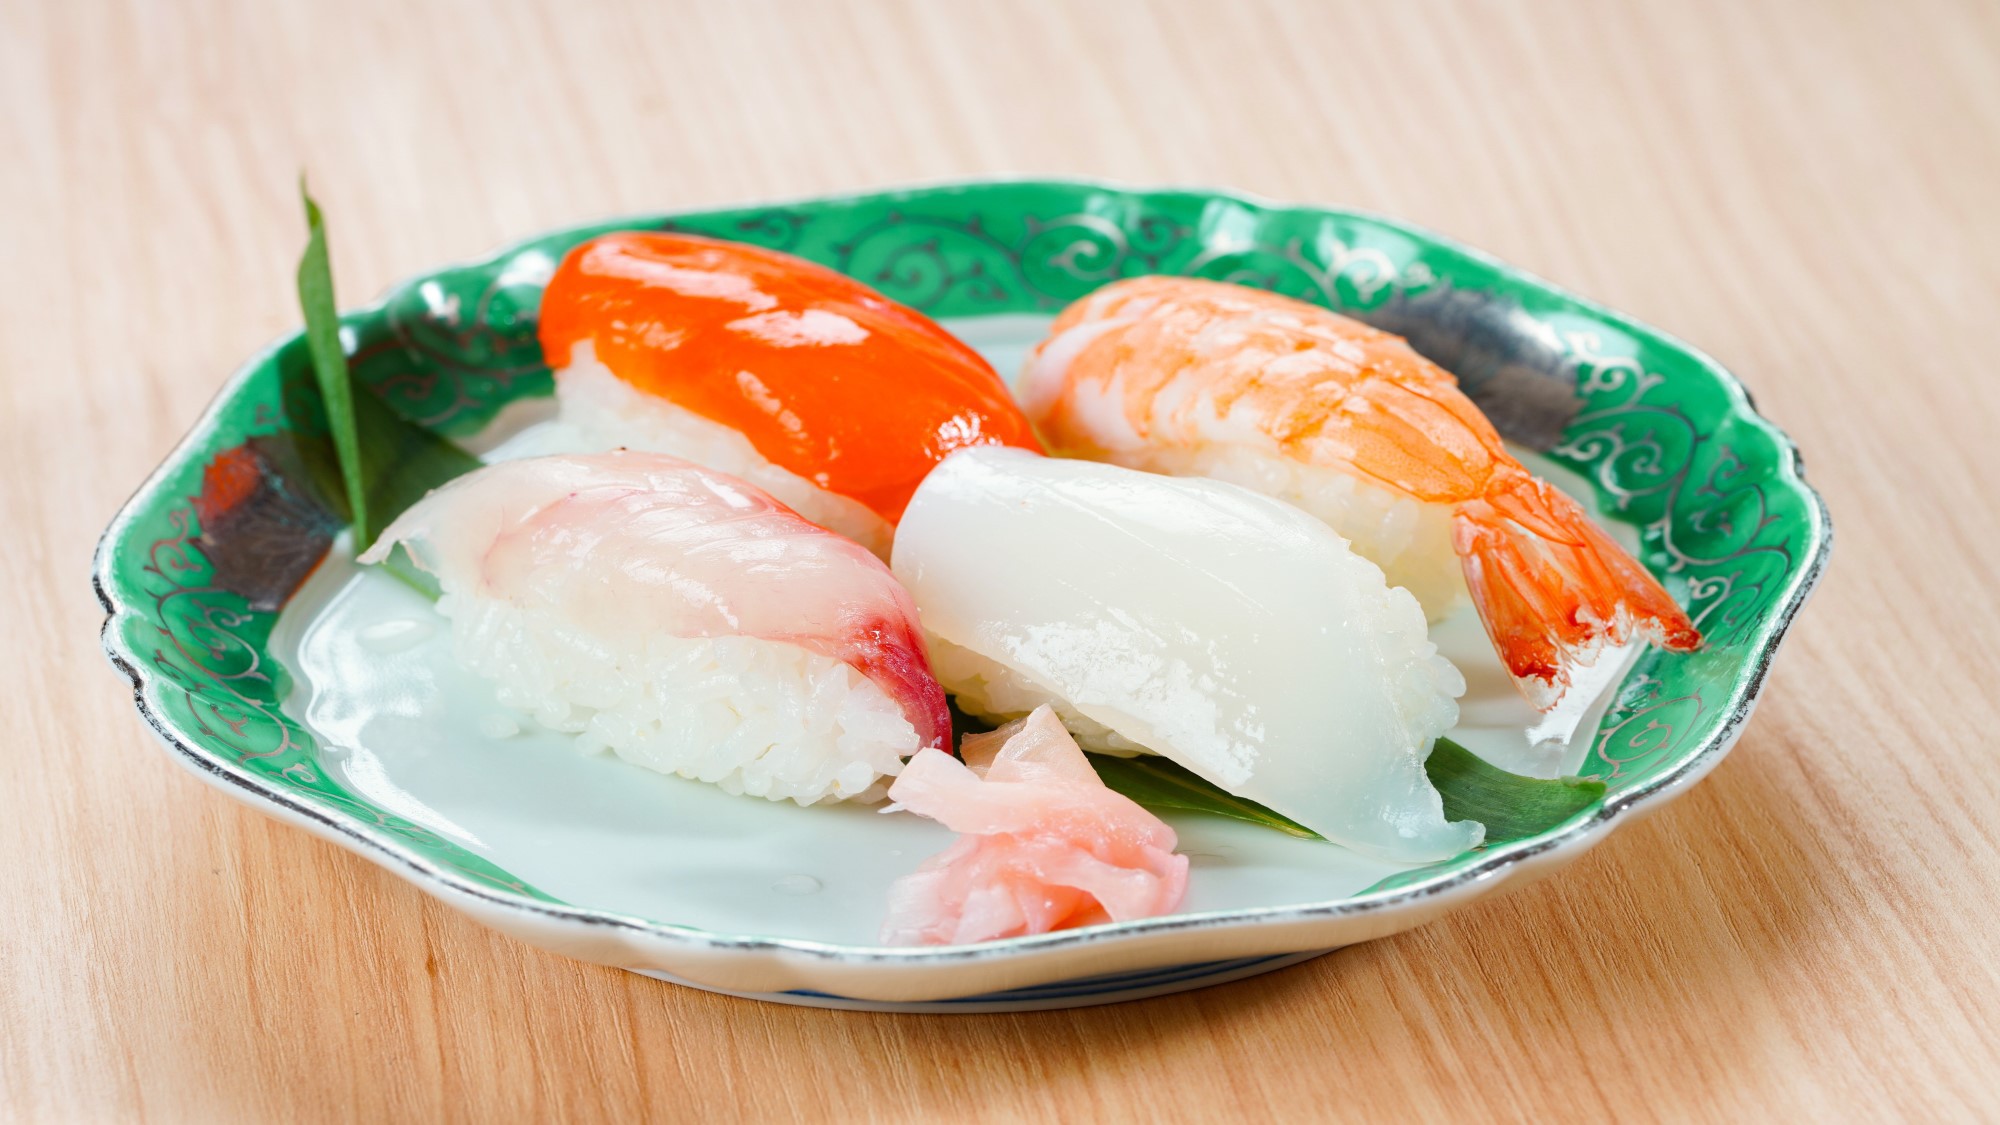 【夕食ブッフェ】4/27〜MENU一例・王道サーモン、コハダなどの「握り寿司4種」